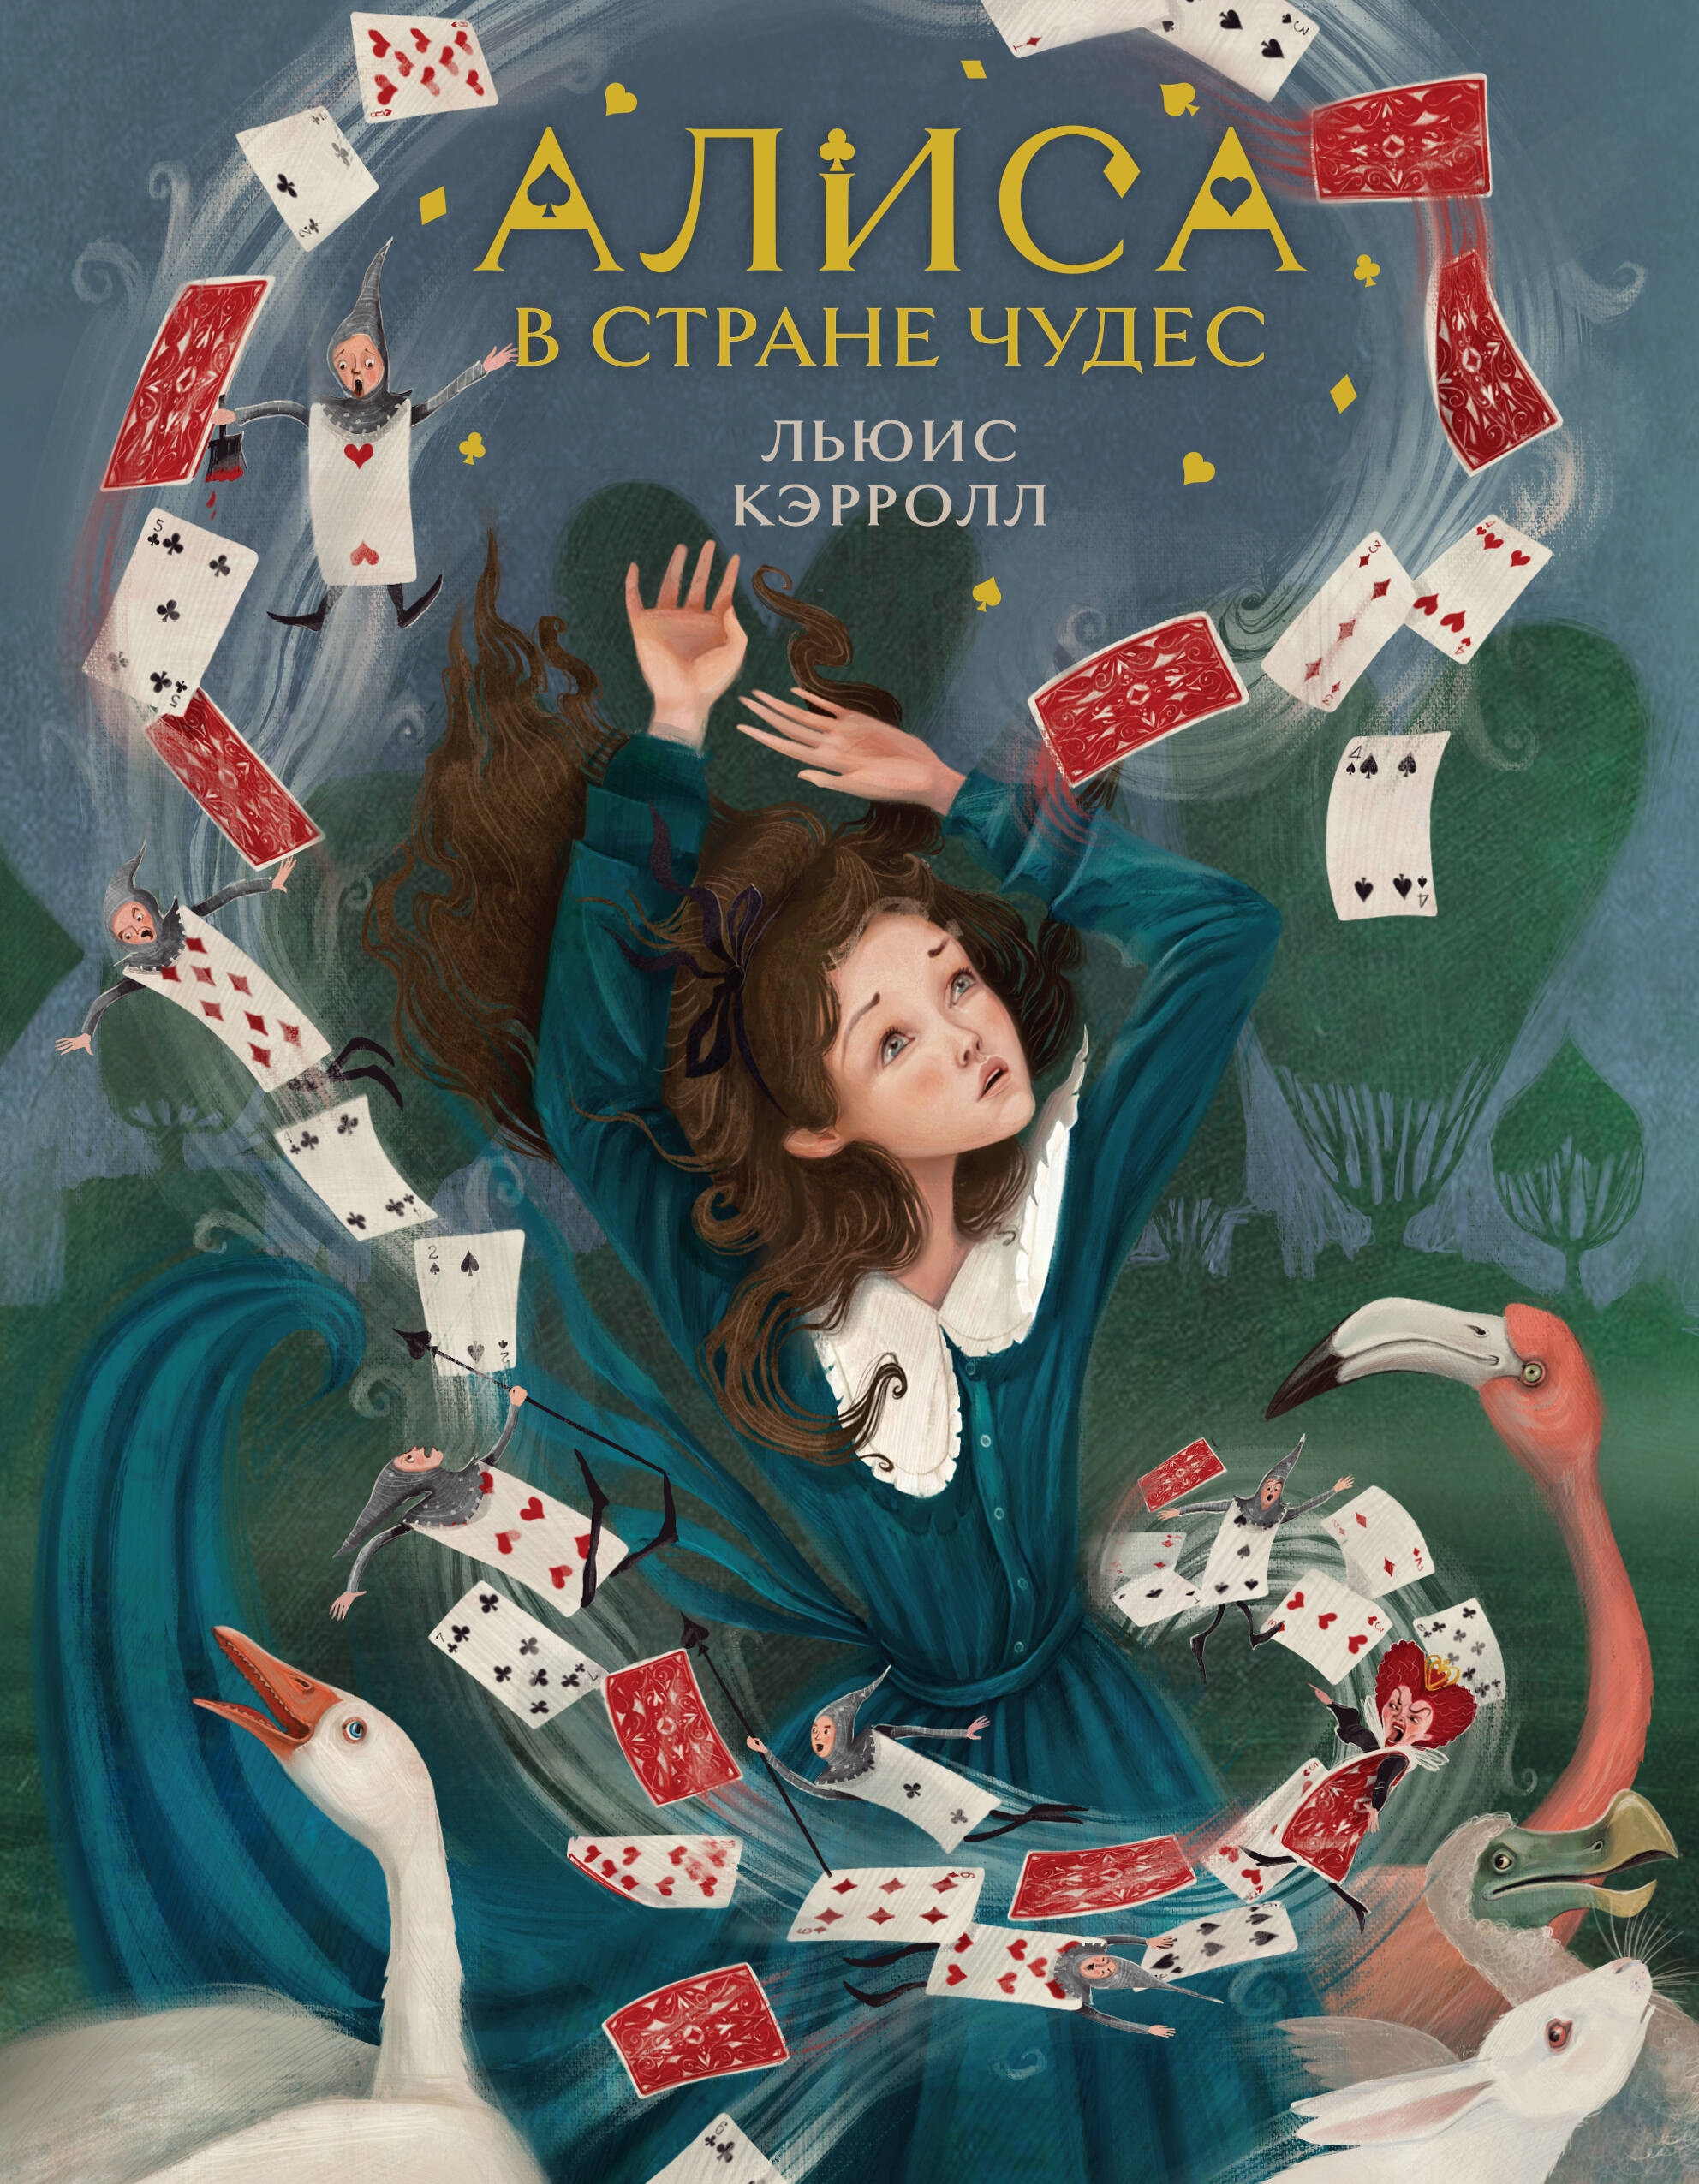 Алиса в Стране чудес (иллюстрированное издание)